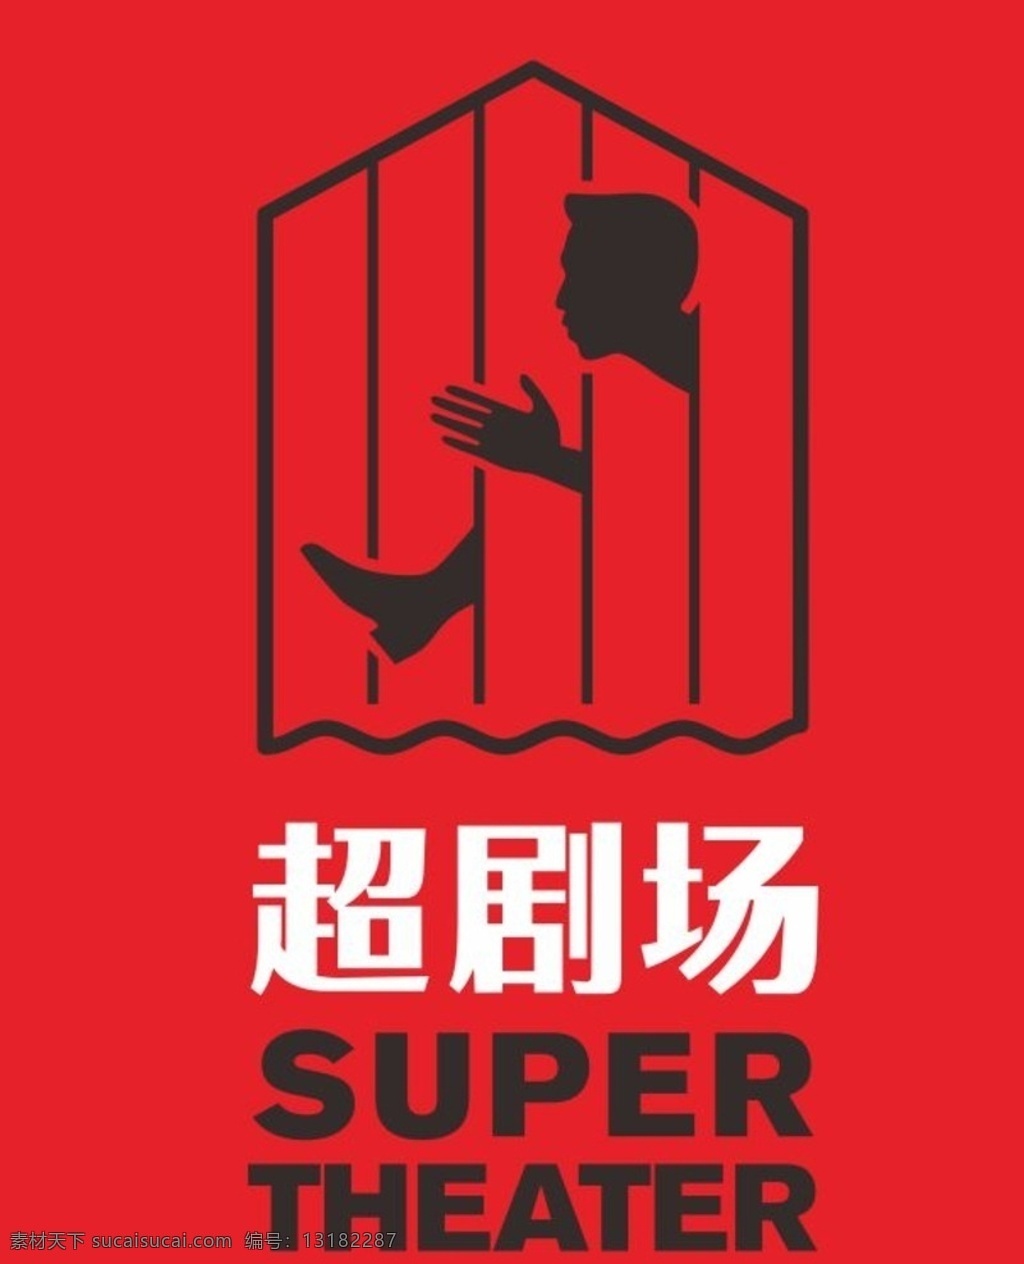 超 剧场 logo 邓超 逗比邓 话剧 舞台剧 戏剧 喜剧 super theater 欢乐剧 标志 标志图标 企业